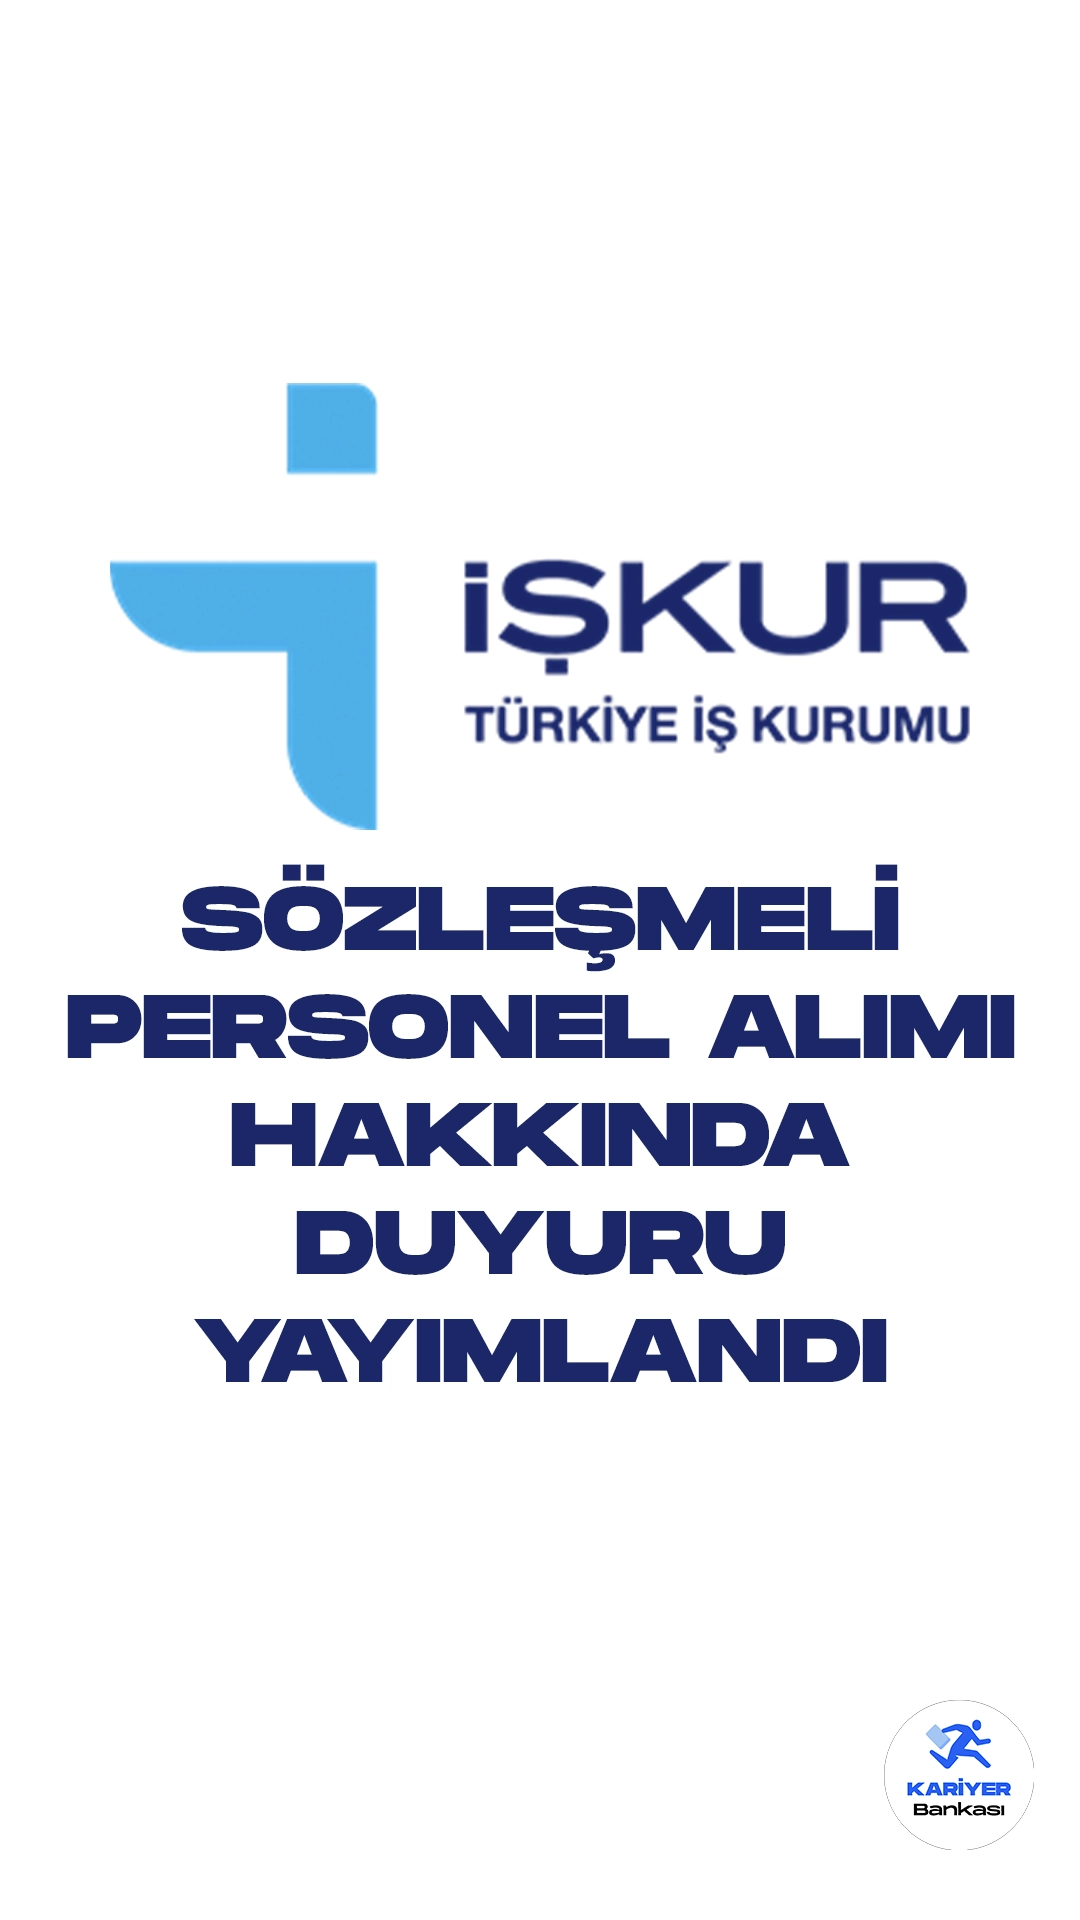 İŞKUR Sözleşmeli Personel Alımı Hakkında Duyuru Yayımlandı. Türkiye İş Kurumu sayfasından yayımlanan duyuruda, sözleşmeli büro personeli alımı kapsamında yedek adayların açıklandığı aktarıldı. Sırası gelen yedek adayların istenilen belgeleri 8 Ocak-19 Ocak 2024 tarihleri arasında Türkiye İş Kurumu Genel Müdürlüğü Personel Dairesi Başkanlığına (Emniyet Mah. Mevlana Bul. No:42 Yenimahalle/ANKARA)  şahsen getirmeleri veya posta yoluyla (postada yaşanan gecikmelerden Kurumumuz sorumlu olmayacaktır) göndermeleri gerektiği kaydedildi.